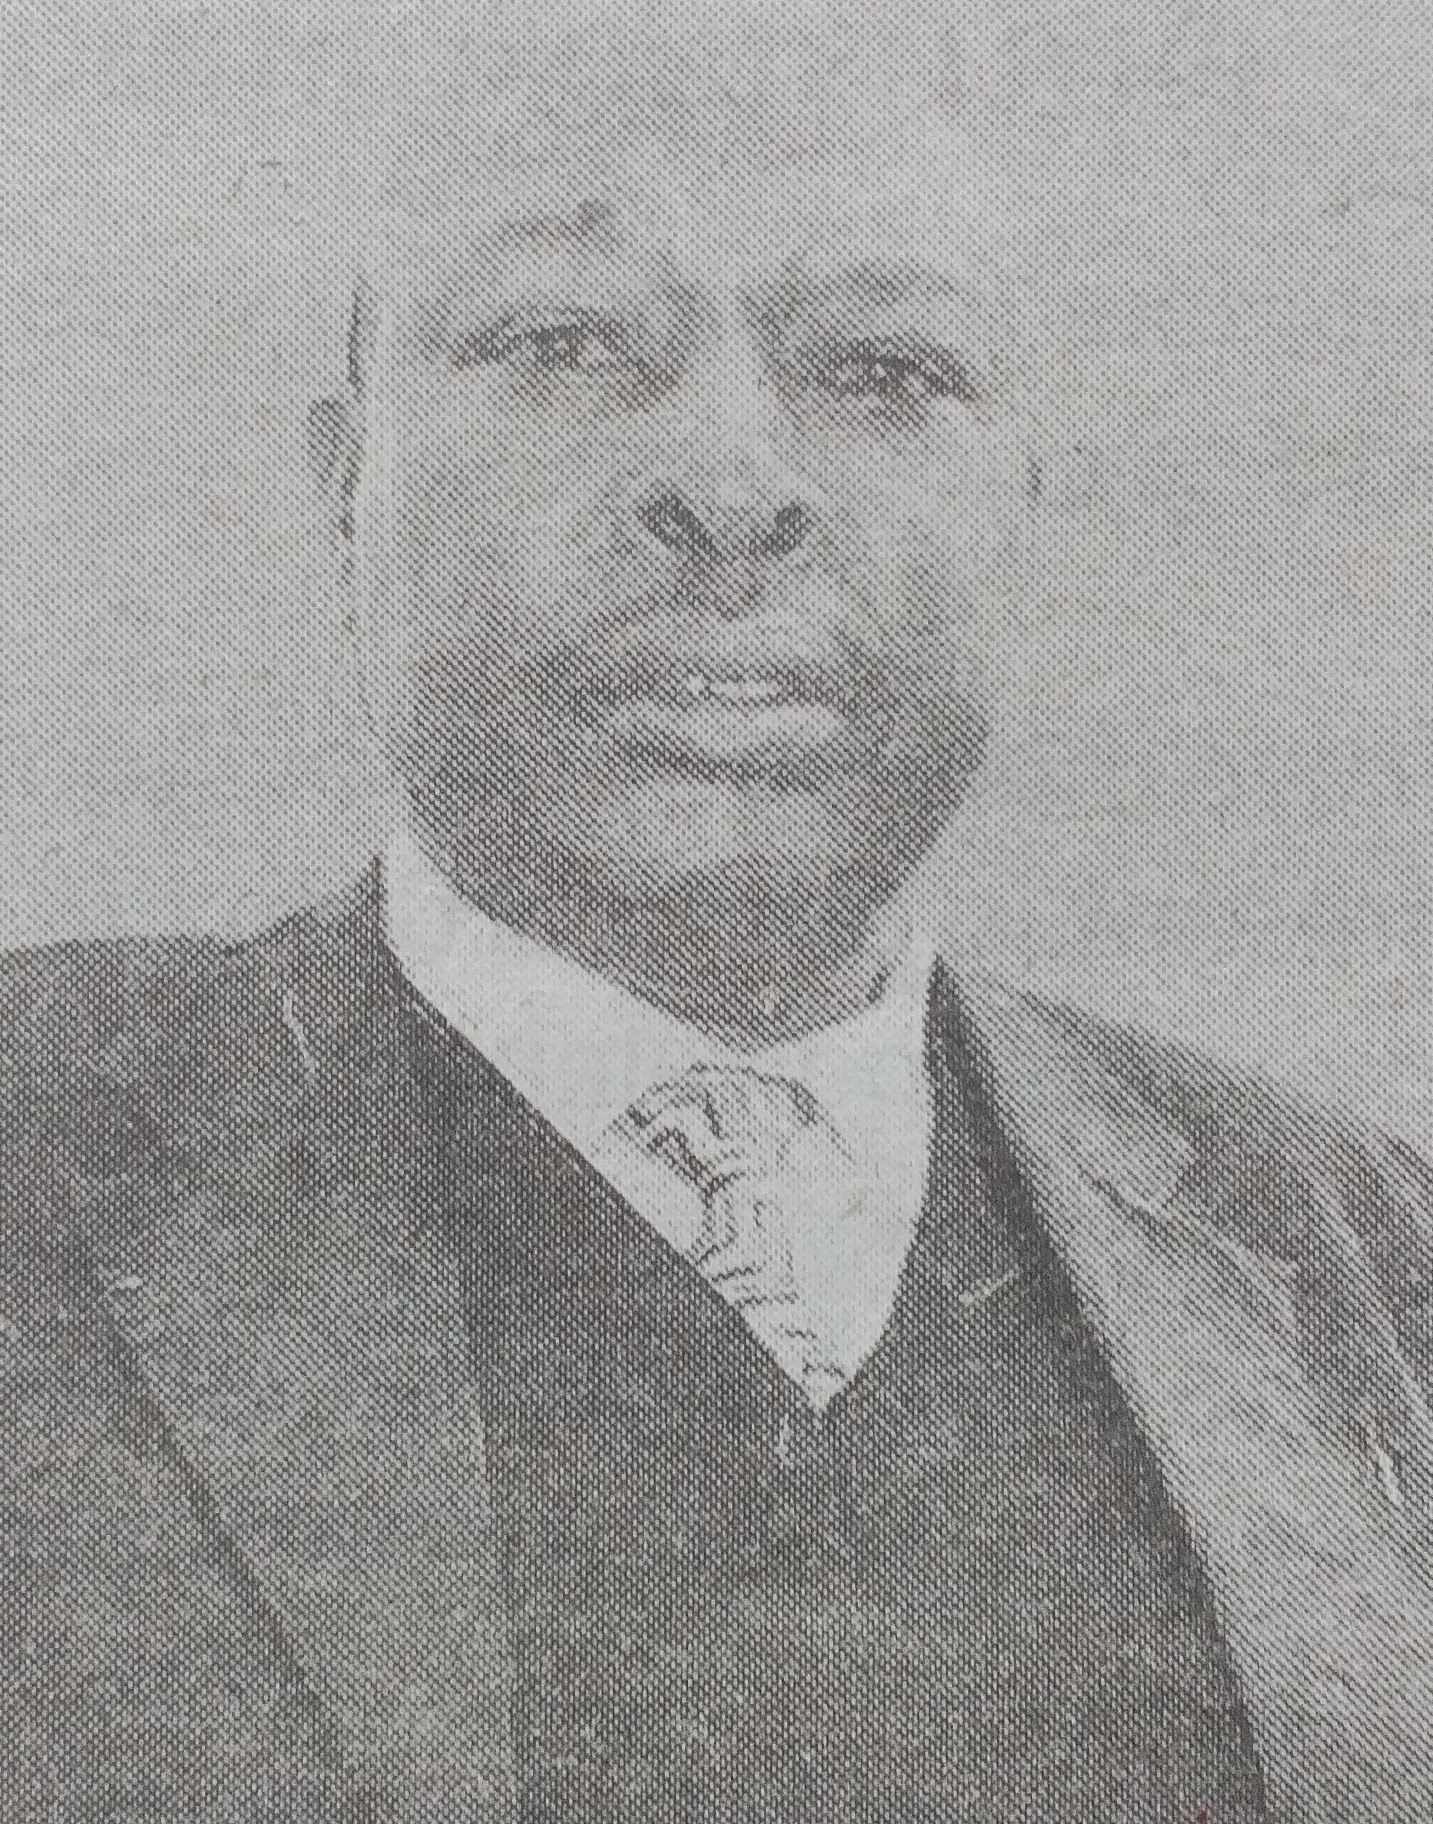 Obituary Image of Robert Kyalo Ngwili